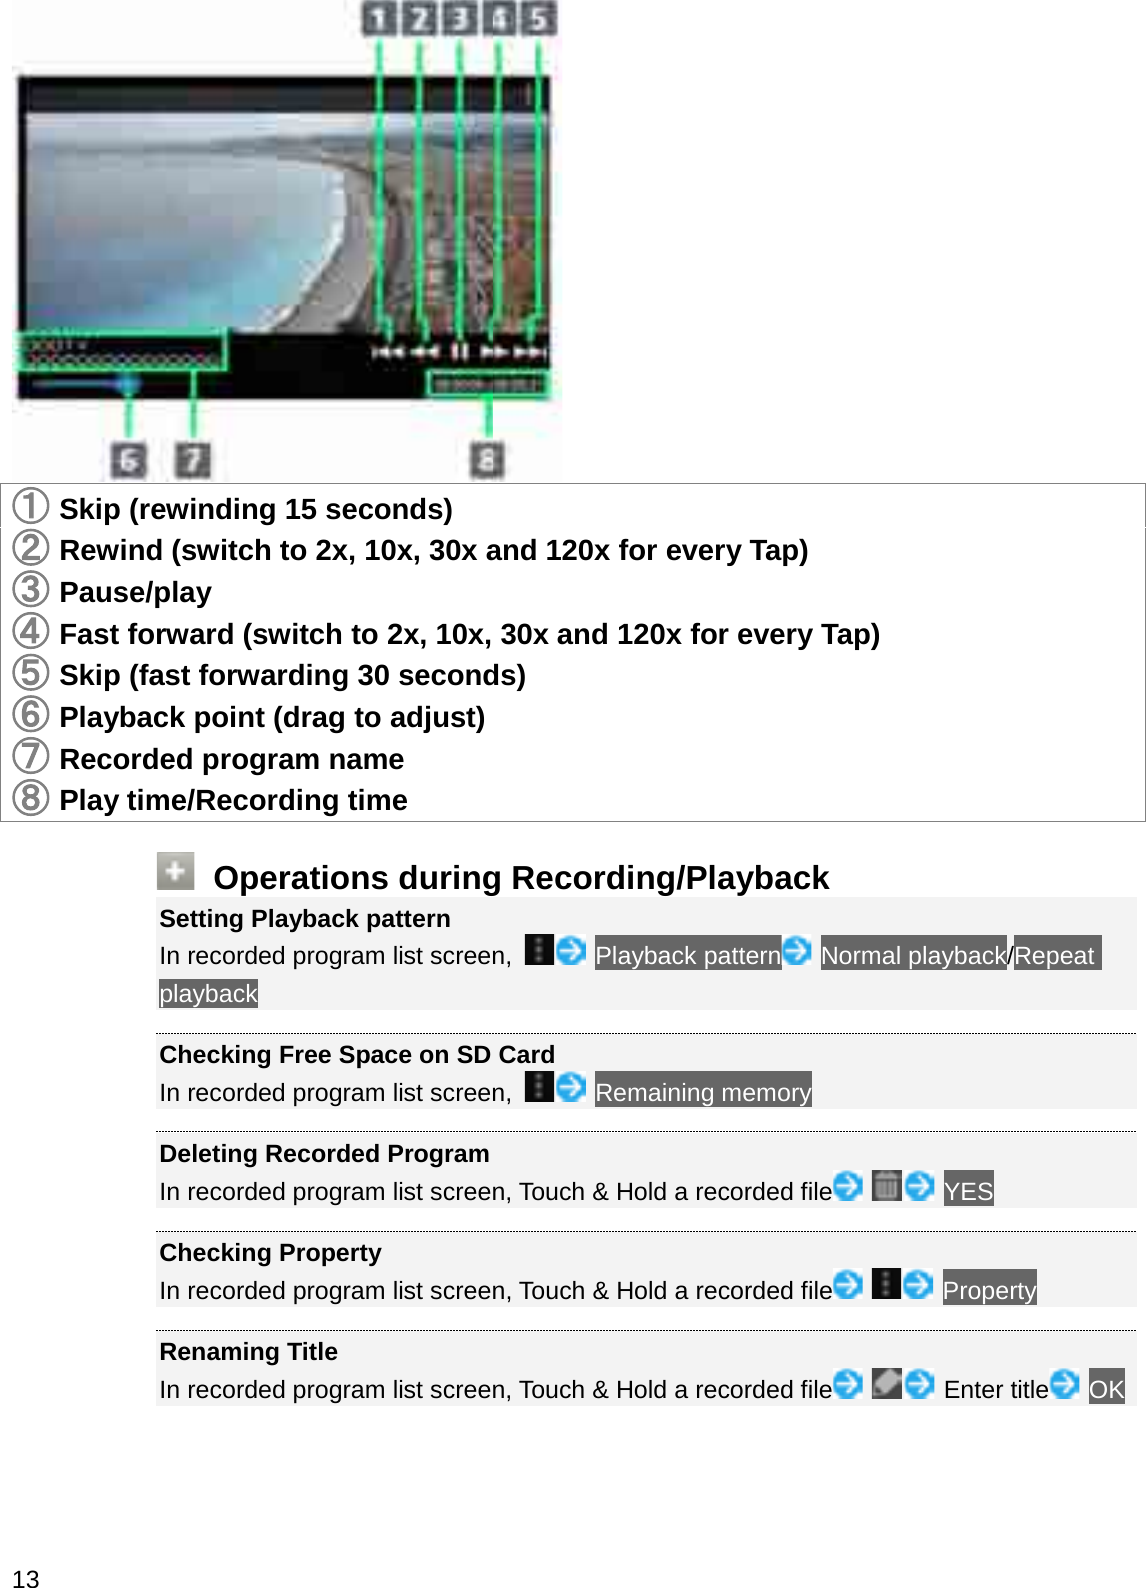 䐟䐟Skip (rewinding 15 seconds)䐠Rewind (switch to 2x, 10x, 30x and 120x for every Tap)䐡Pause/play䐢Fast forward (switch to 2x, 10x, 30x and 120x for every Tap)䐣Skip (fast forwarding 30 seconds)䐤Playback point (drag to adjust)䐥Recorded program name䐦Play time/Recording timeOperations during Recording/PlaybackSetting Playback patternIn recorded program list screen,  Playback pattern Normal playback/Repeat playbackChecking Free Space on SD CardIn recorded program list screen,  Remaining memoryDeleting Recorded ProgramIn recorded program list screen, Touch &amp; Hold a recorded file YESChecking PropertyIn recorded program list screen, Touch &amp; Hold a recorded file PropertyRenaming TitleIn recorded program list screen, Touch &amp; Hold a recorded file Enter title OK13